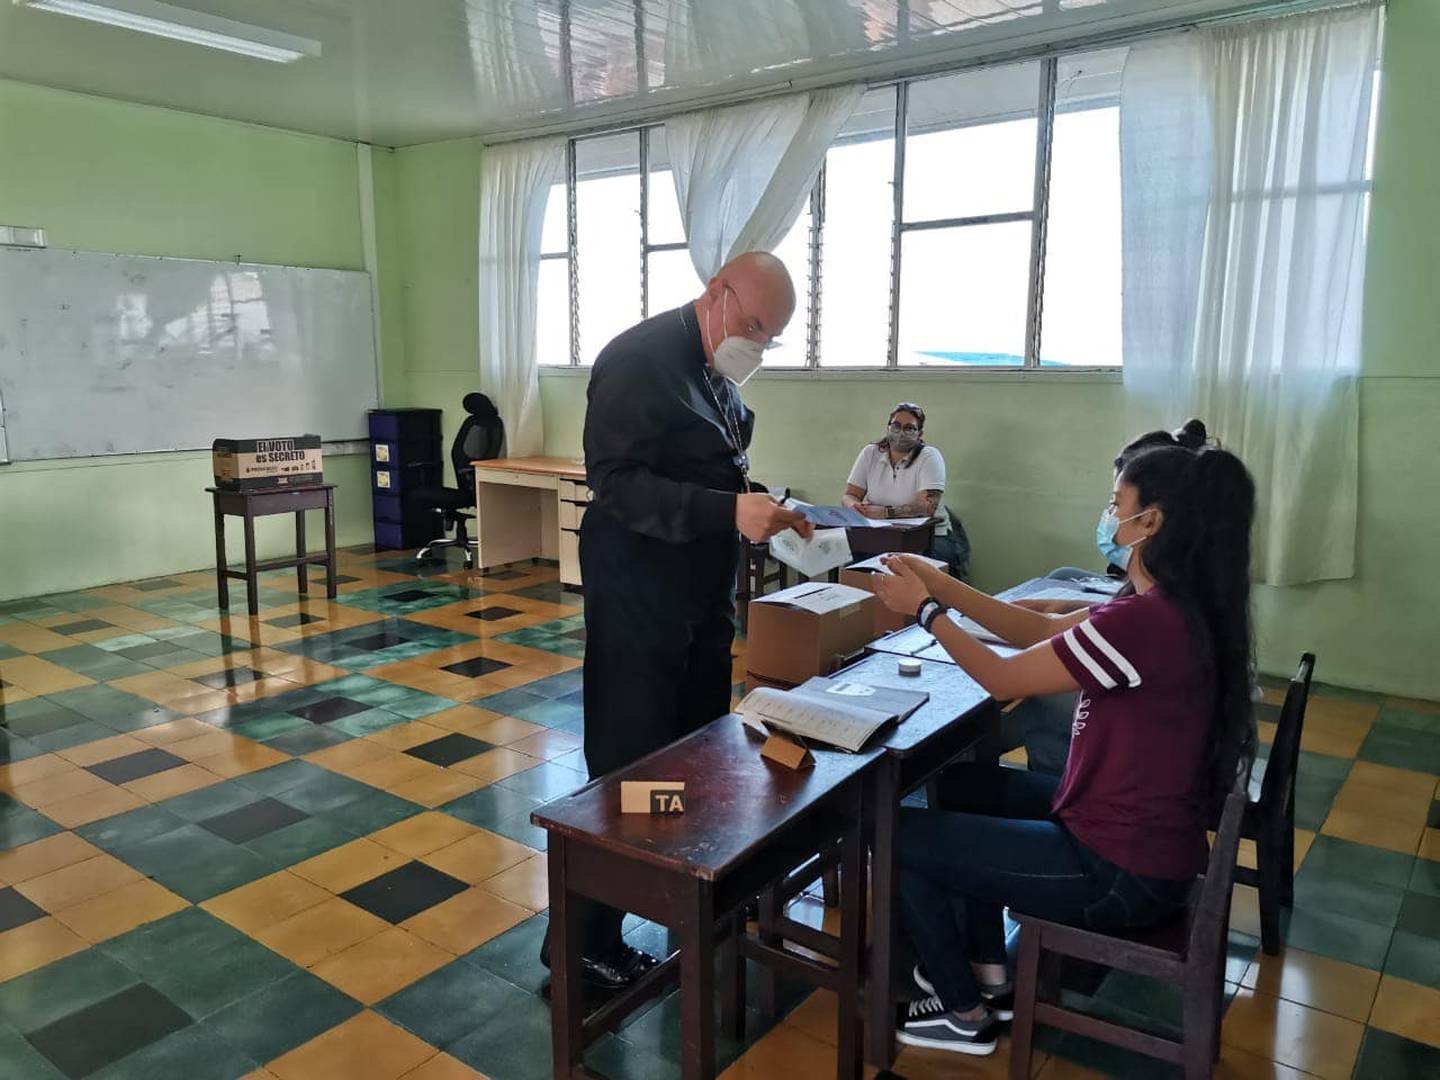 Monseñor José Manuel Garita, obispo de Ciudad Quesada, votará en la Escuela Juan Chaves Rojas, en Cuidad Quesada, tempranito, cerca de las 7 a.m.... porque a las 8 a.m. preside la Misa en la Catedral.